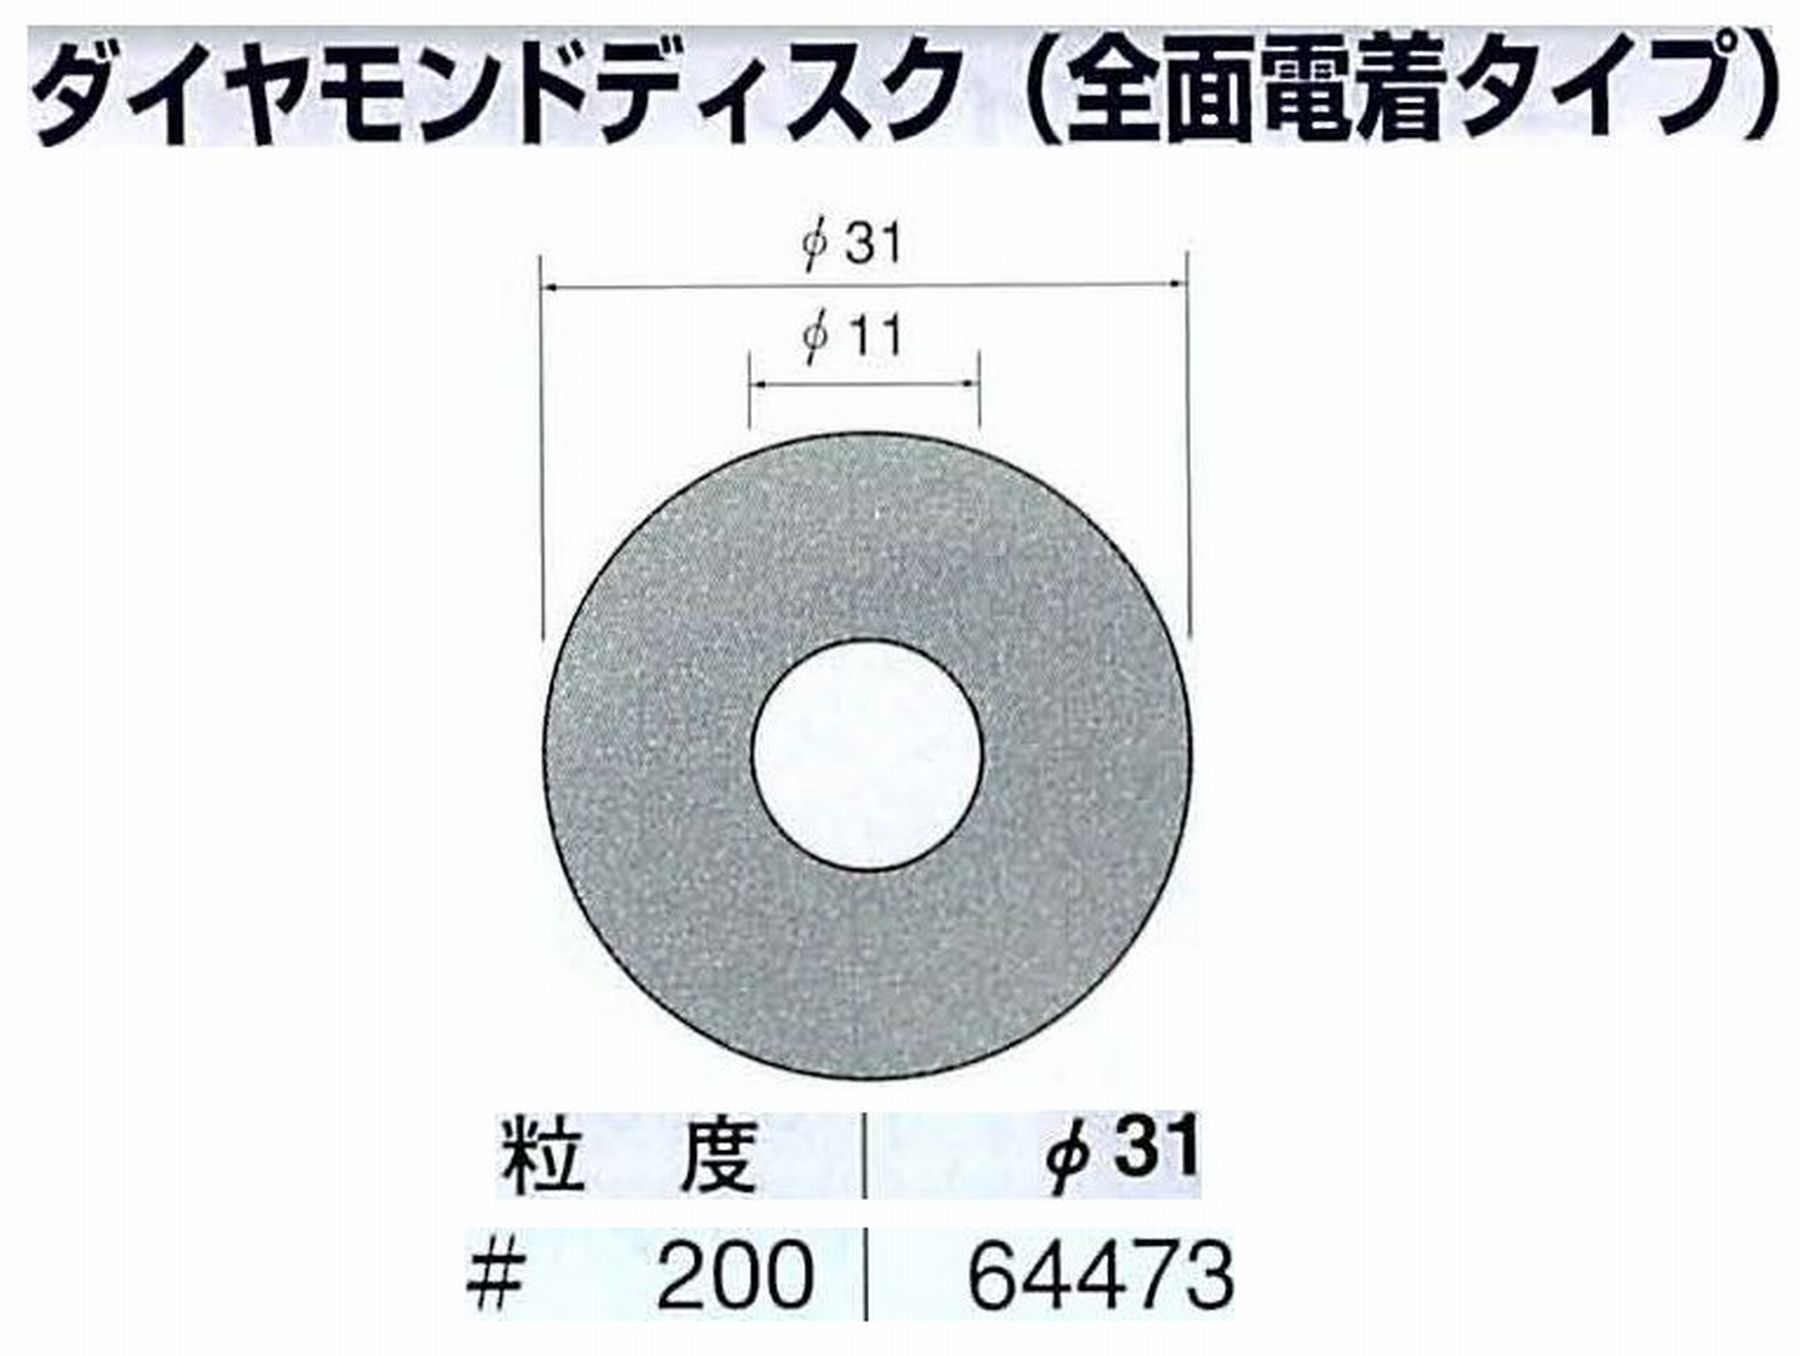 ナカニシ/NAKANISHI アングルグラインダ(電動・エアー) アングルアタッチメント専用工具 ダイヤモンドディスク(全面電着タイプ) 64473